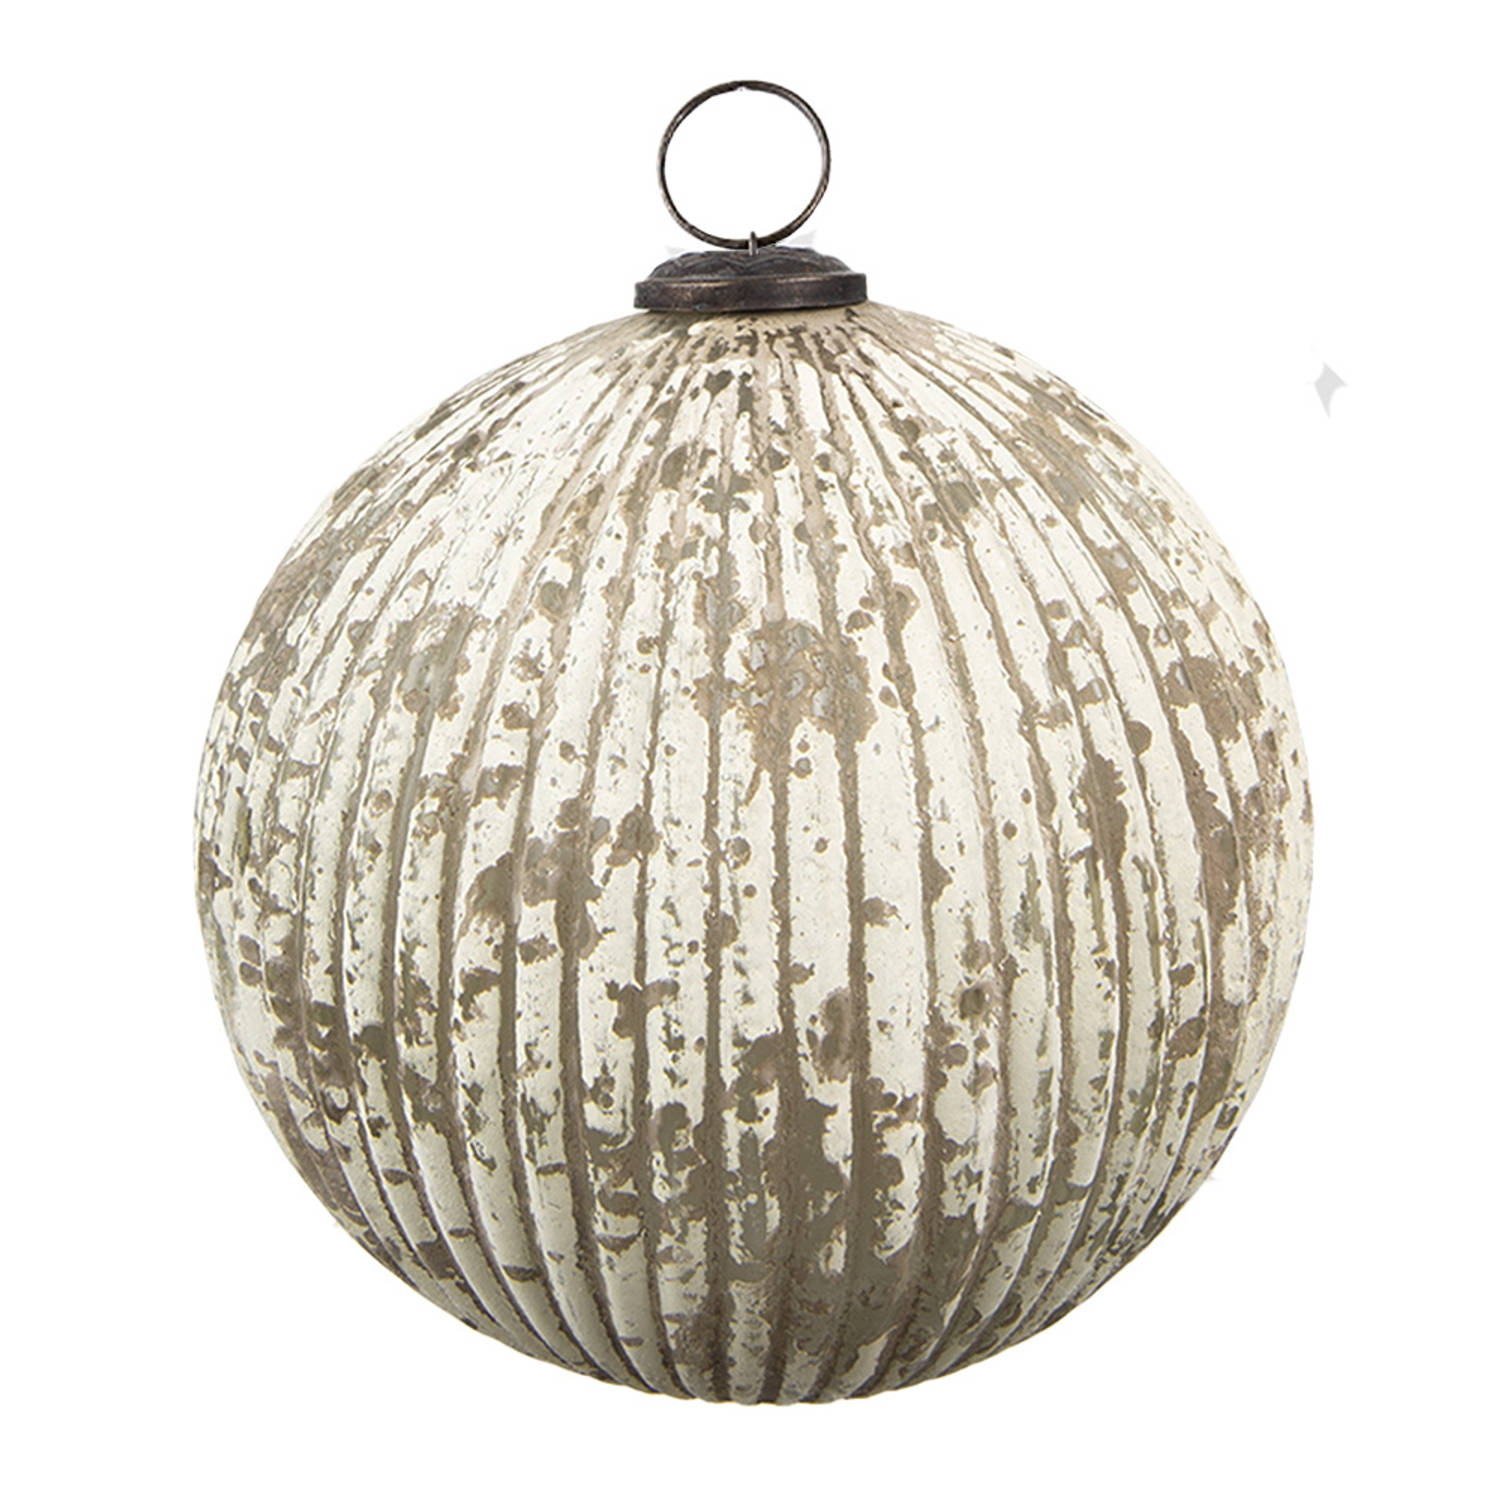 HAES DECO - Kerstbal - Formaat Ø 20x20 cm - Kleur Beige - Materiaal Glas - Kerstversiering, Kerstdecoratie, Decoratie Hanger, Kerstboomversiering